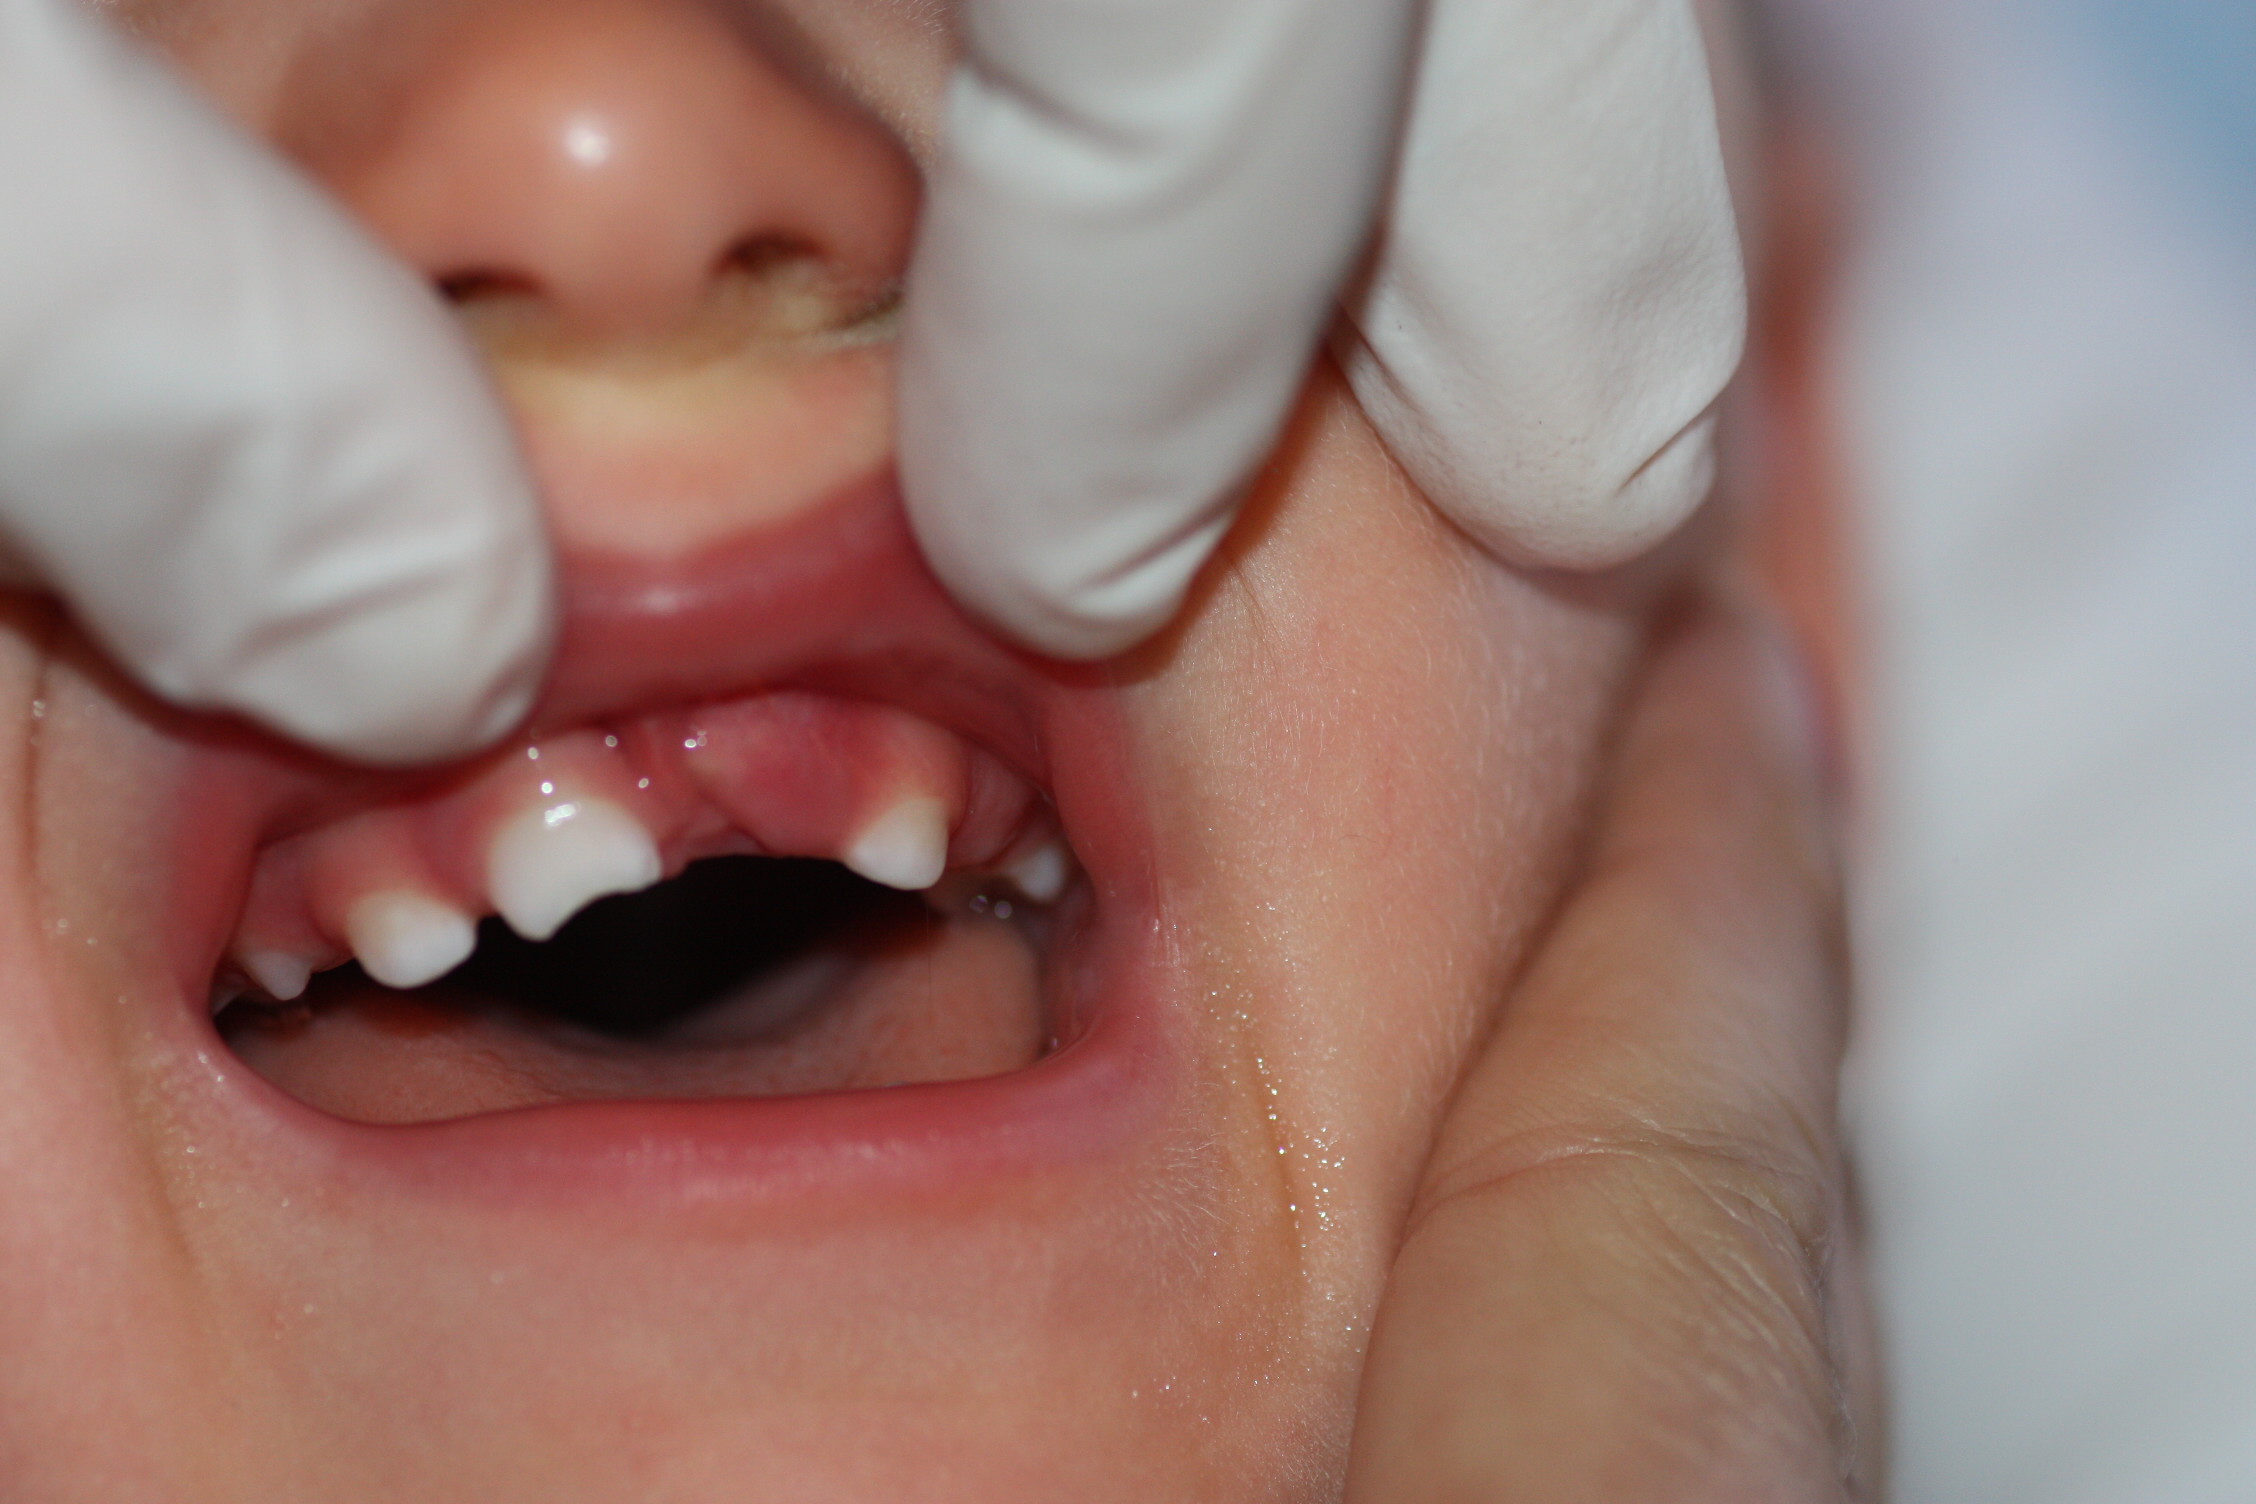 Fractura dentaria secundaria a traumatismo: no se aprecia la corona del diente